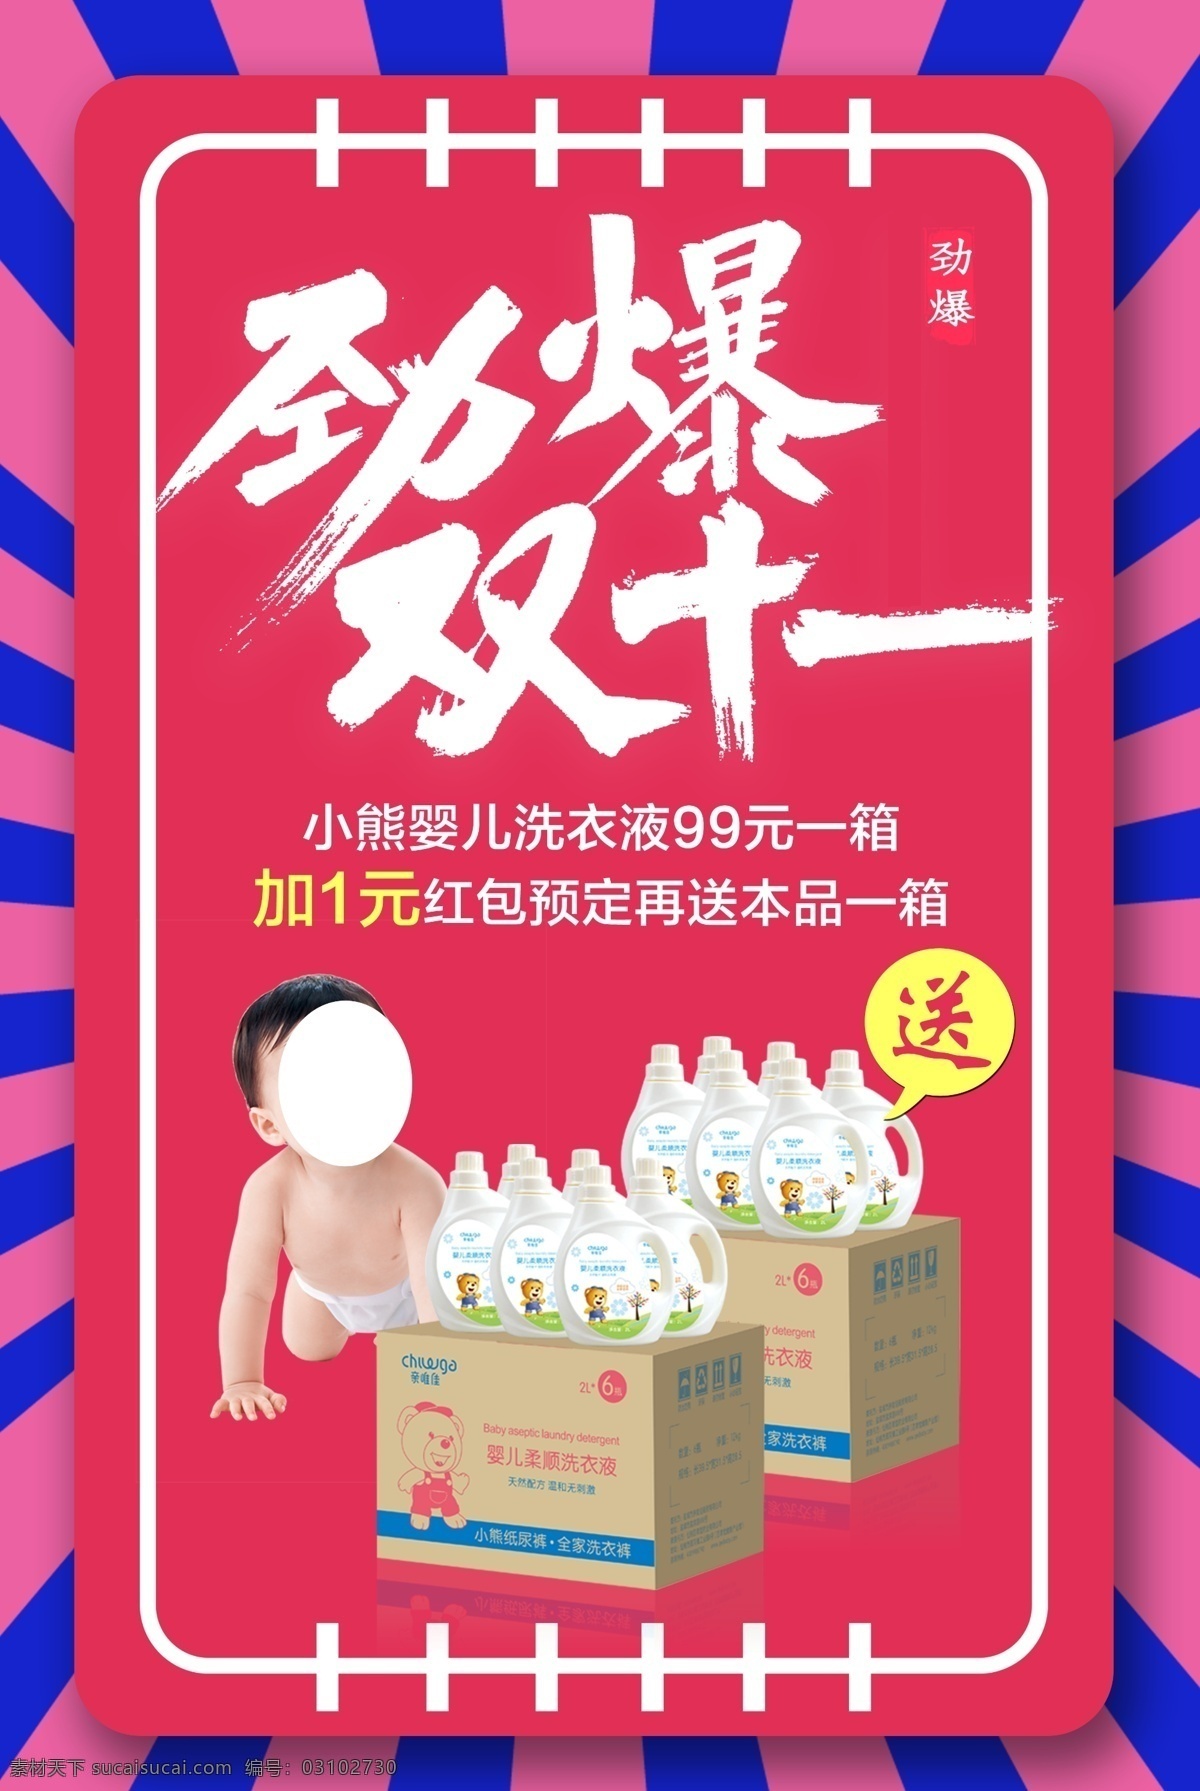 劲爆 双十 活动 海报 双十一 宝宝 婴幼儿 活动海报 源文件